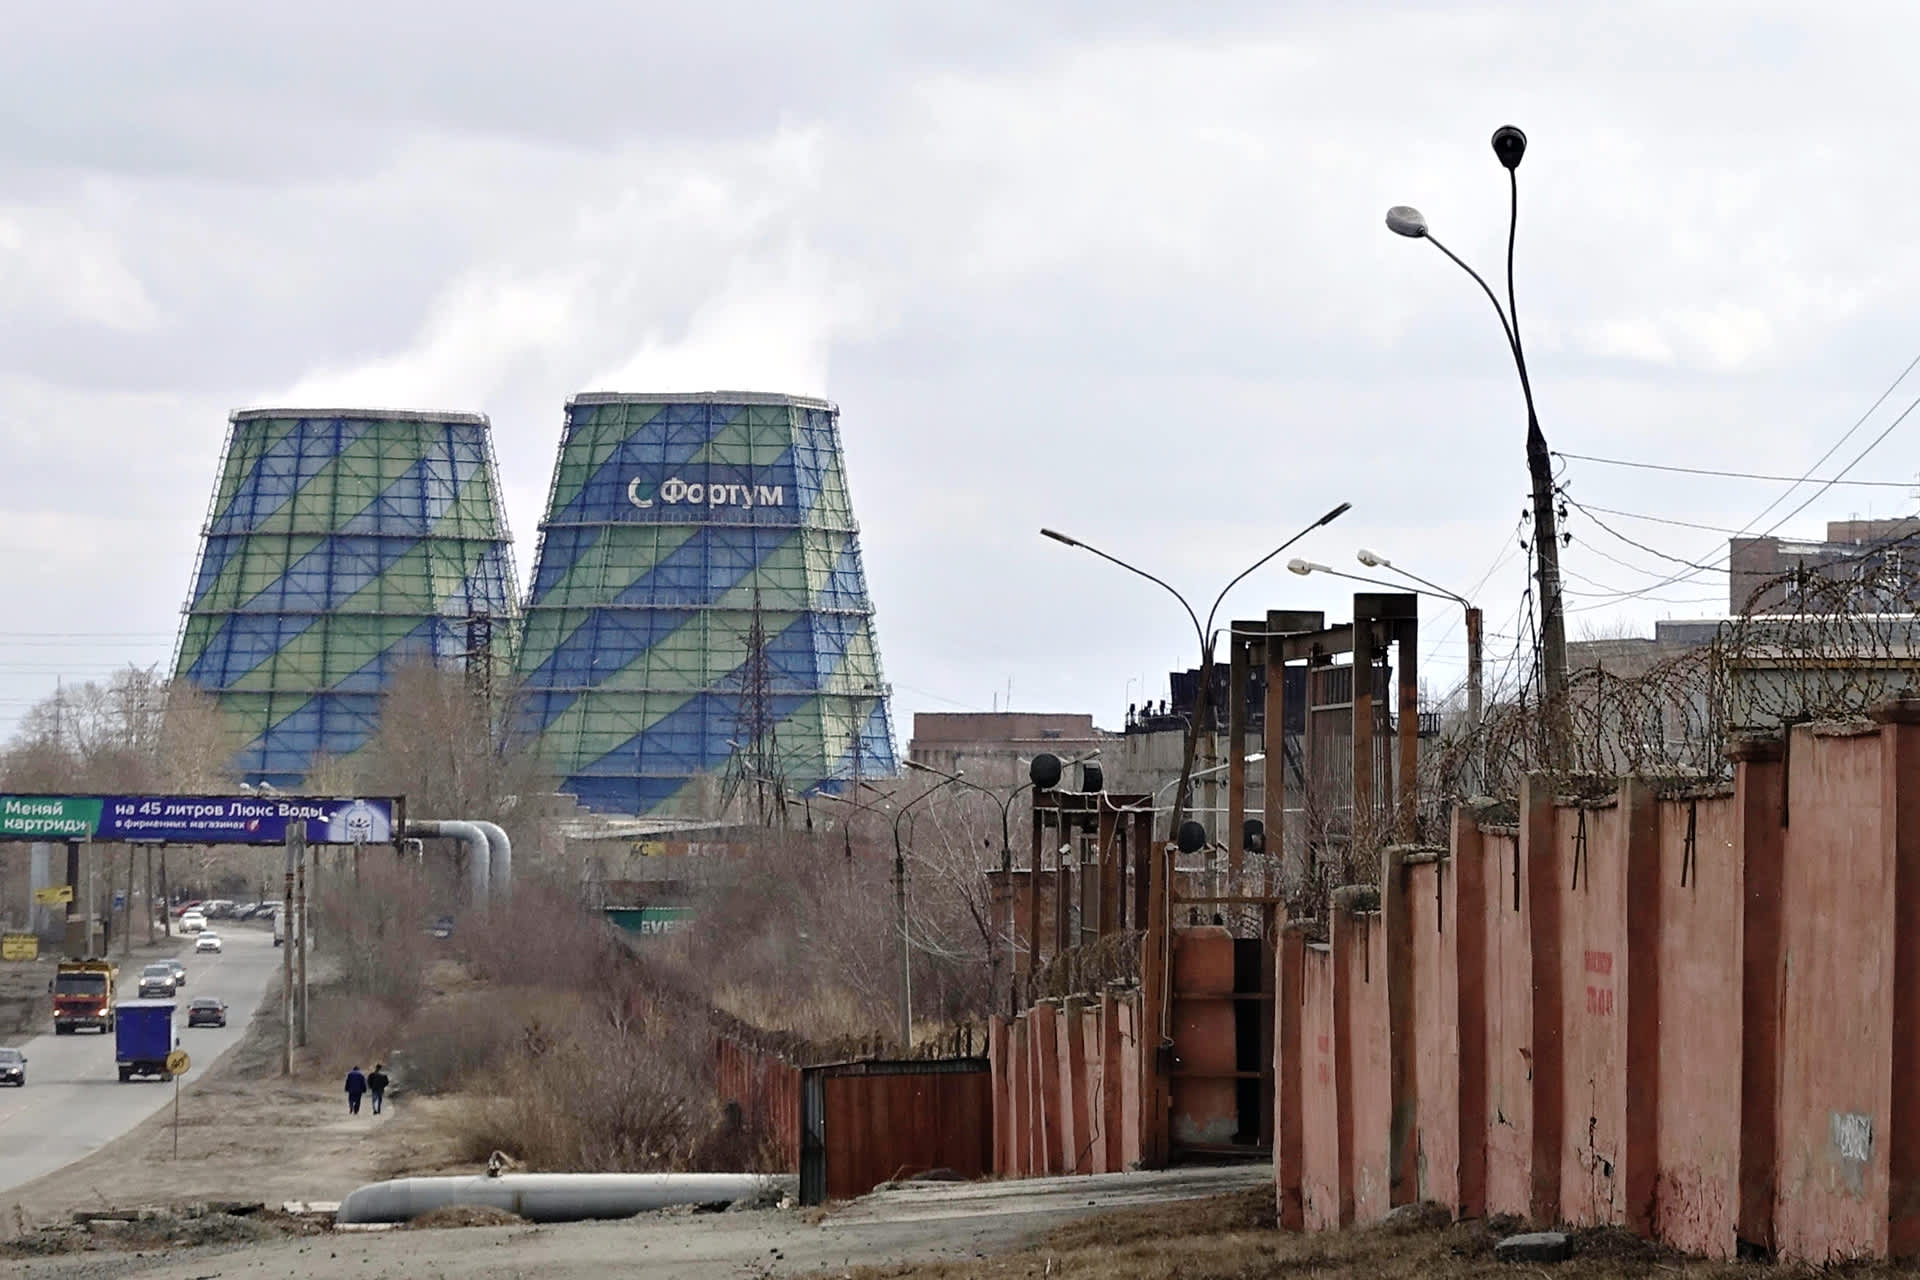 Venäjän Tšeljabinskissa sijaitseva Fortumin lämpövoimala.